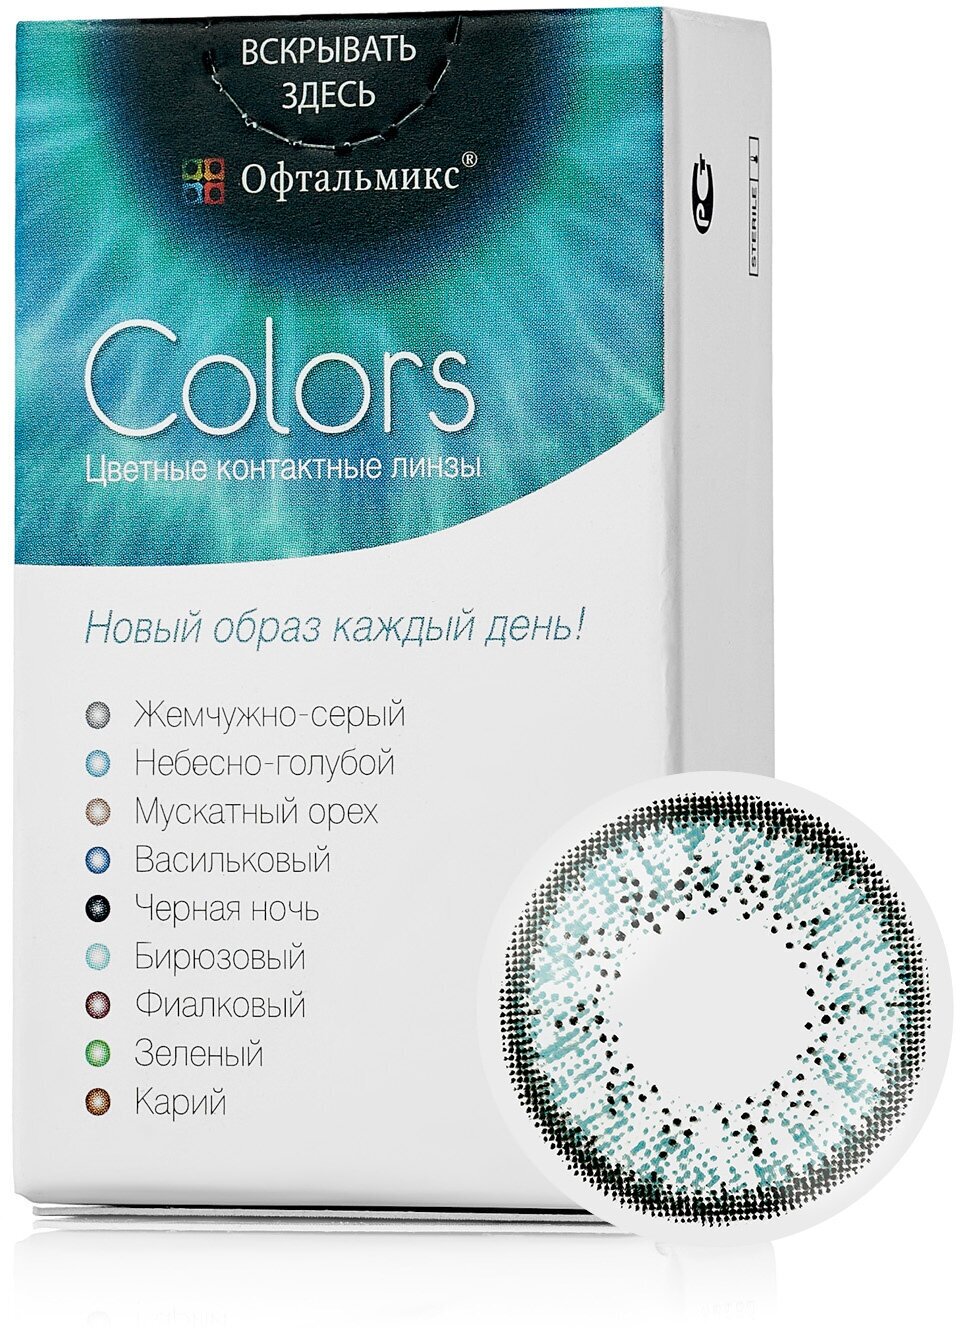 Цветные контактные линзы Офтальмикс Color Sky blue (небесно-голубой) R8.6 -3.5D (2шт.)